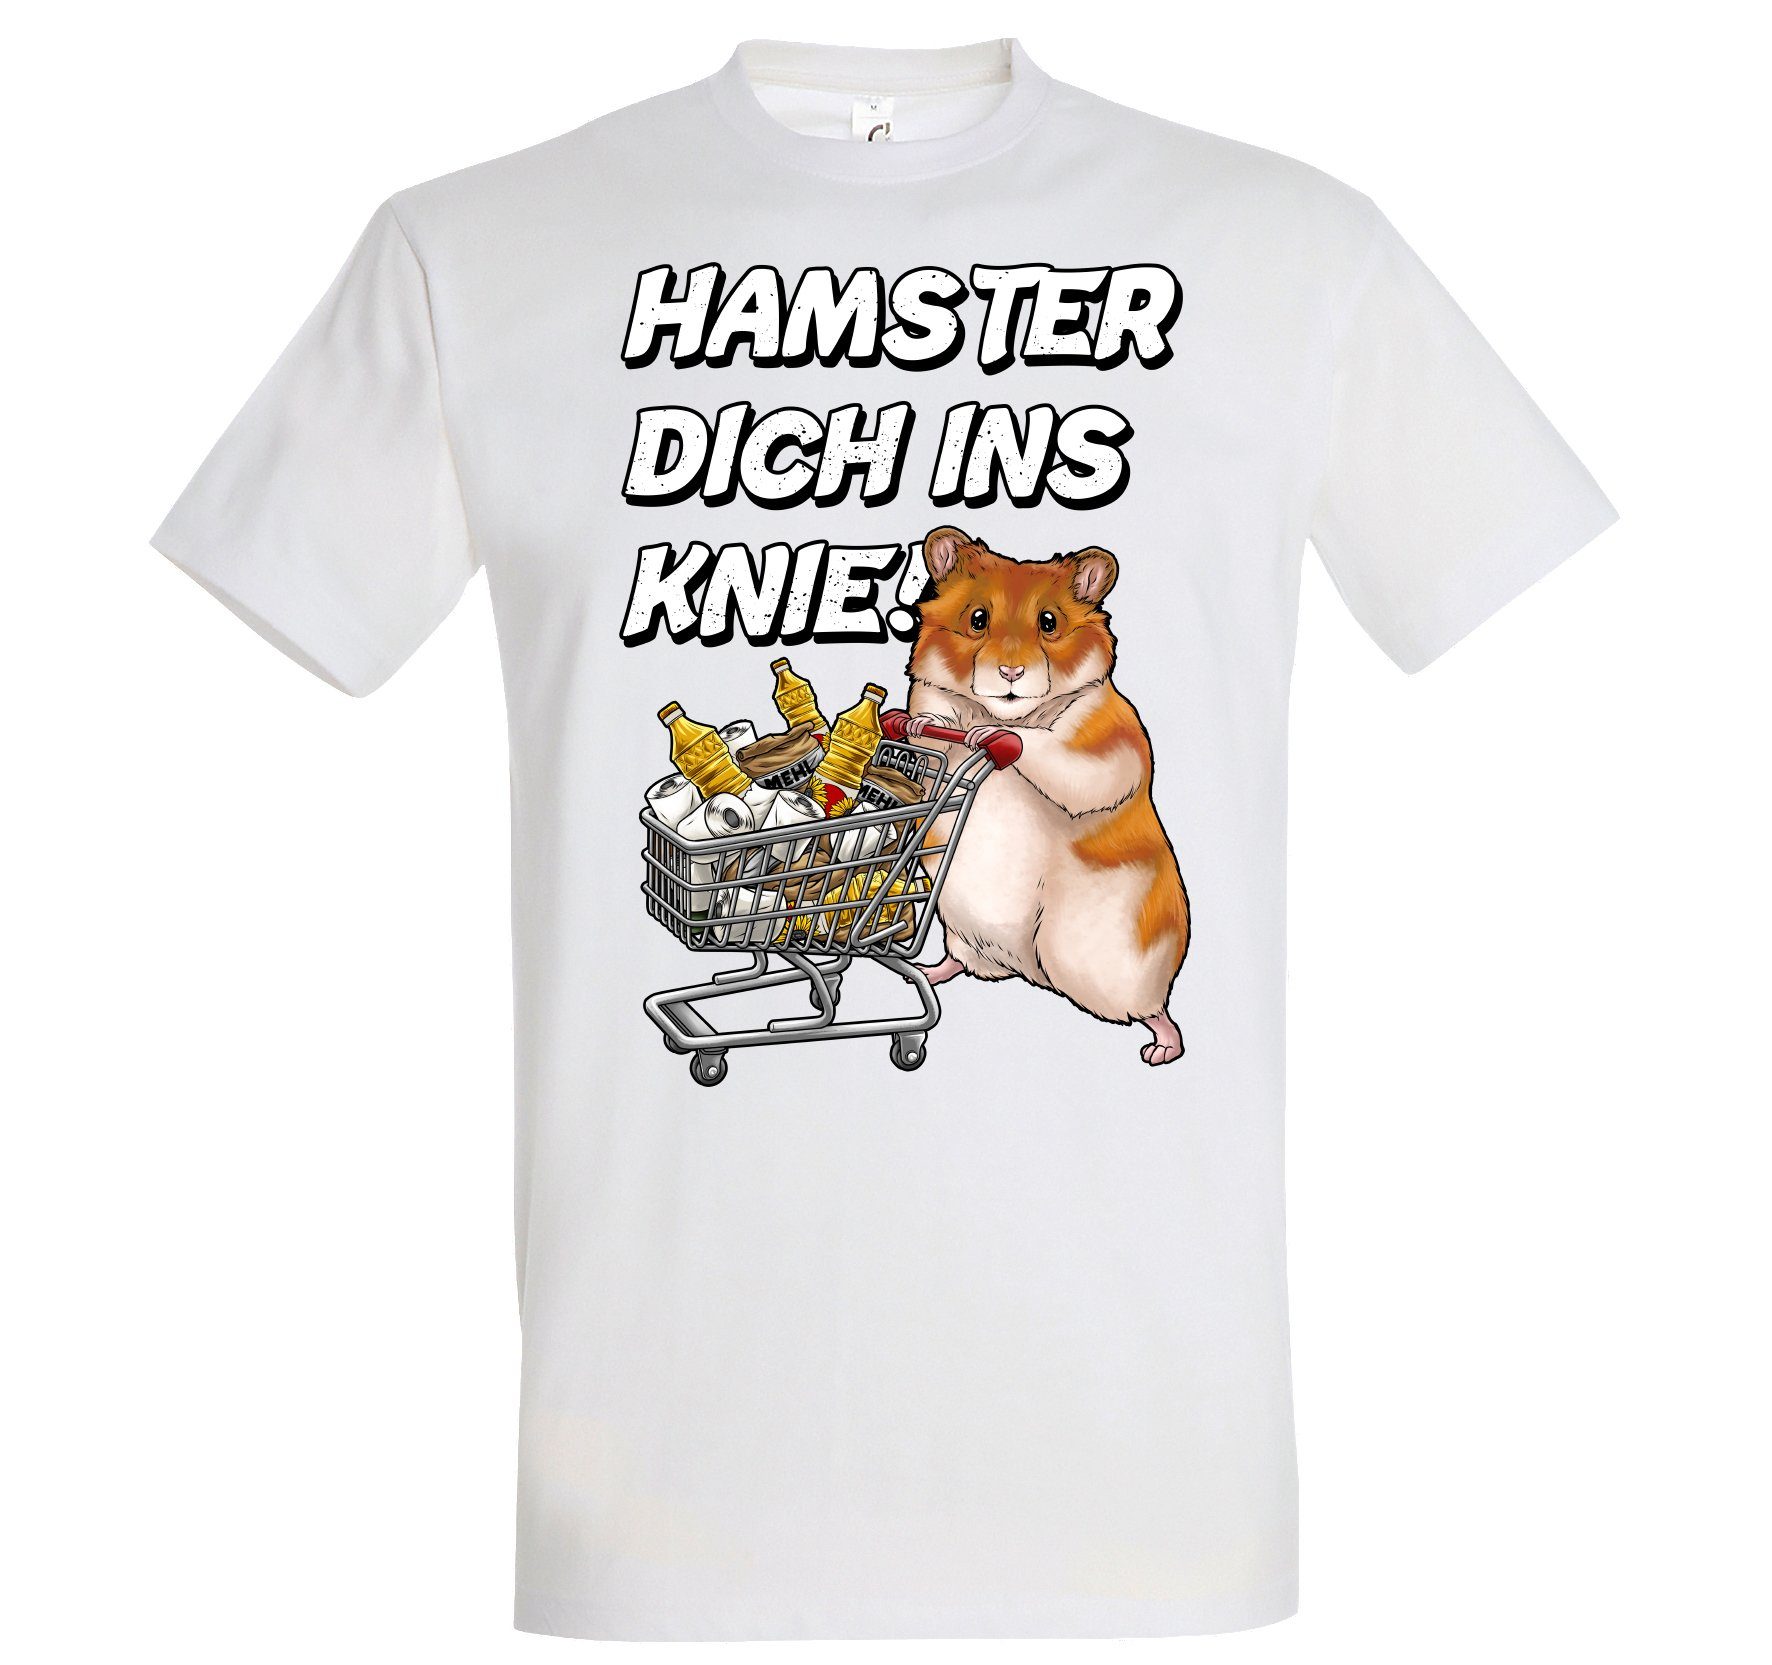 Youth Designz Print-Shirt HAMSTER DICH INS KNIE Herren T-Shirt mit lustigem Spruch Aufdruck Weiß